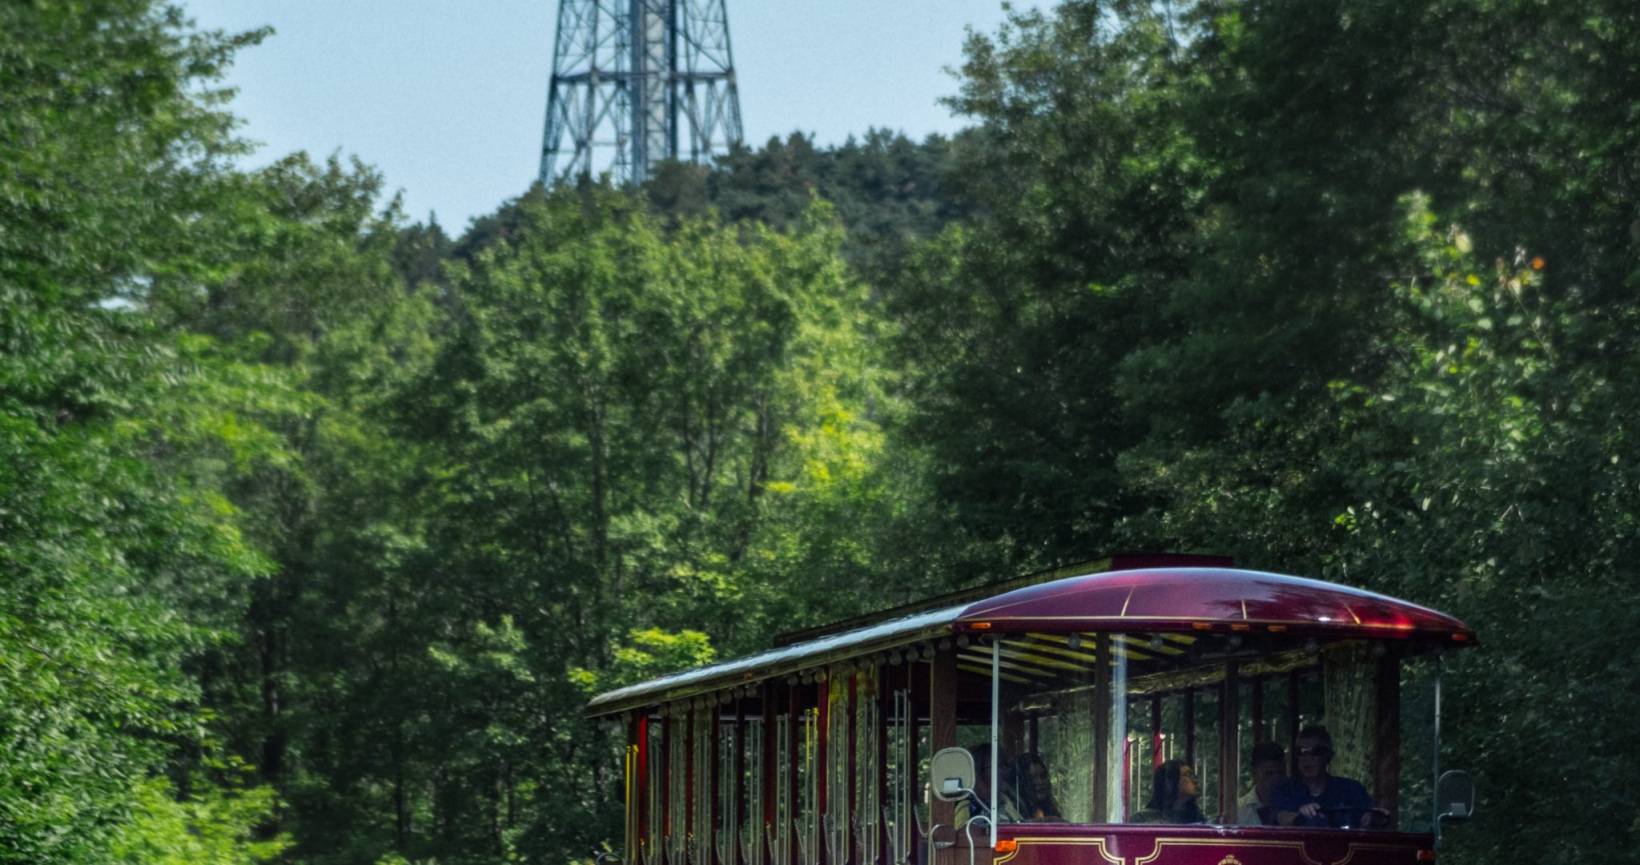 Visite guidée de la ville de Shawinigan à bord d’un autobus de style tramway